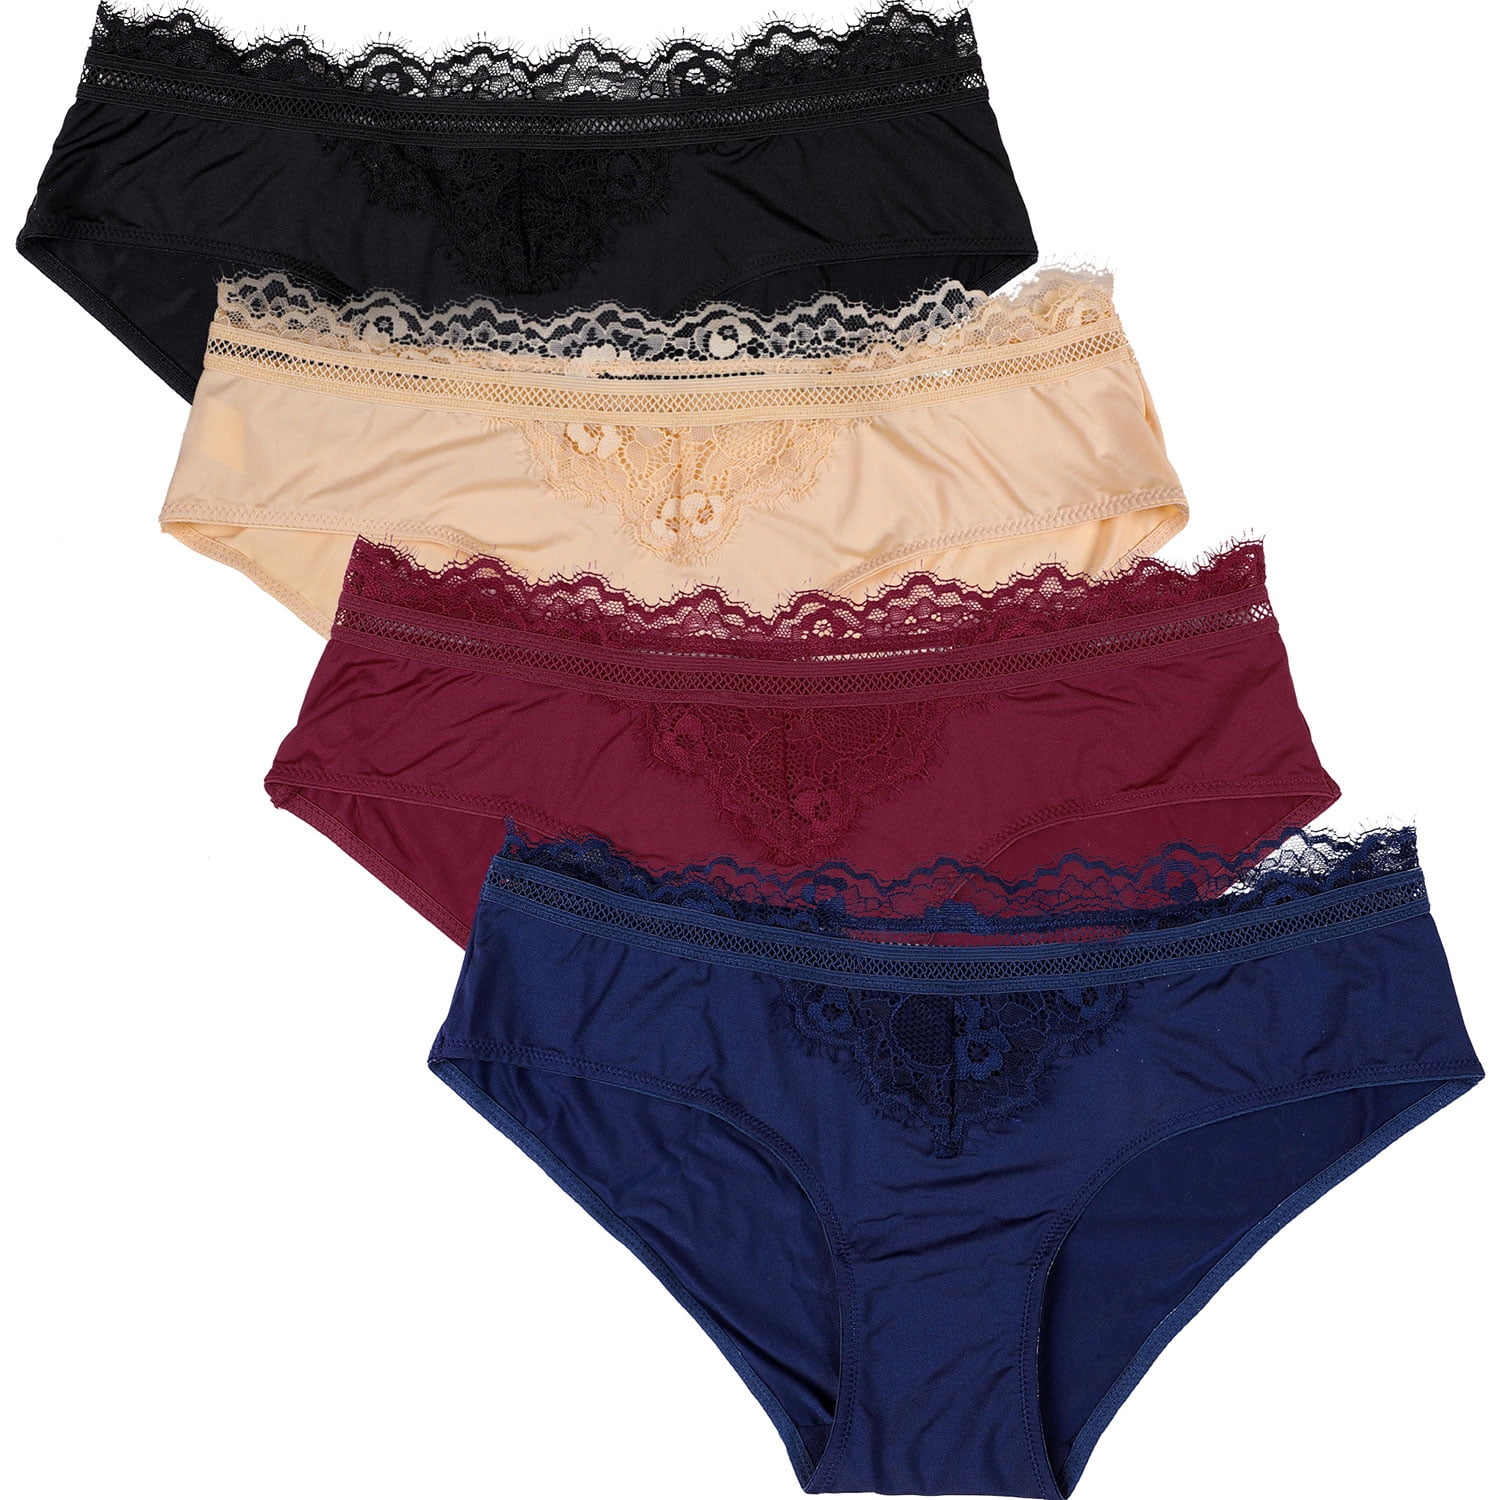 Details about   Lot 5 Women Hipster Bikini Panties Brief Floral Lace Cotton Underwear #C215 